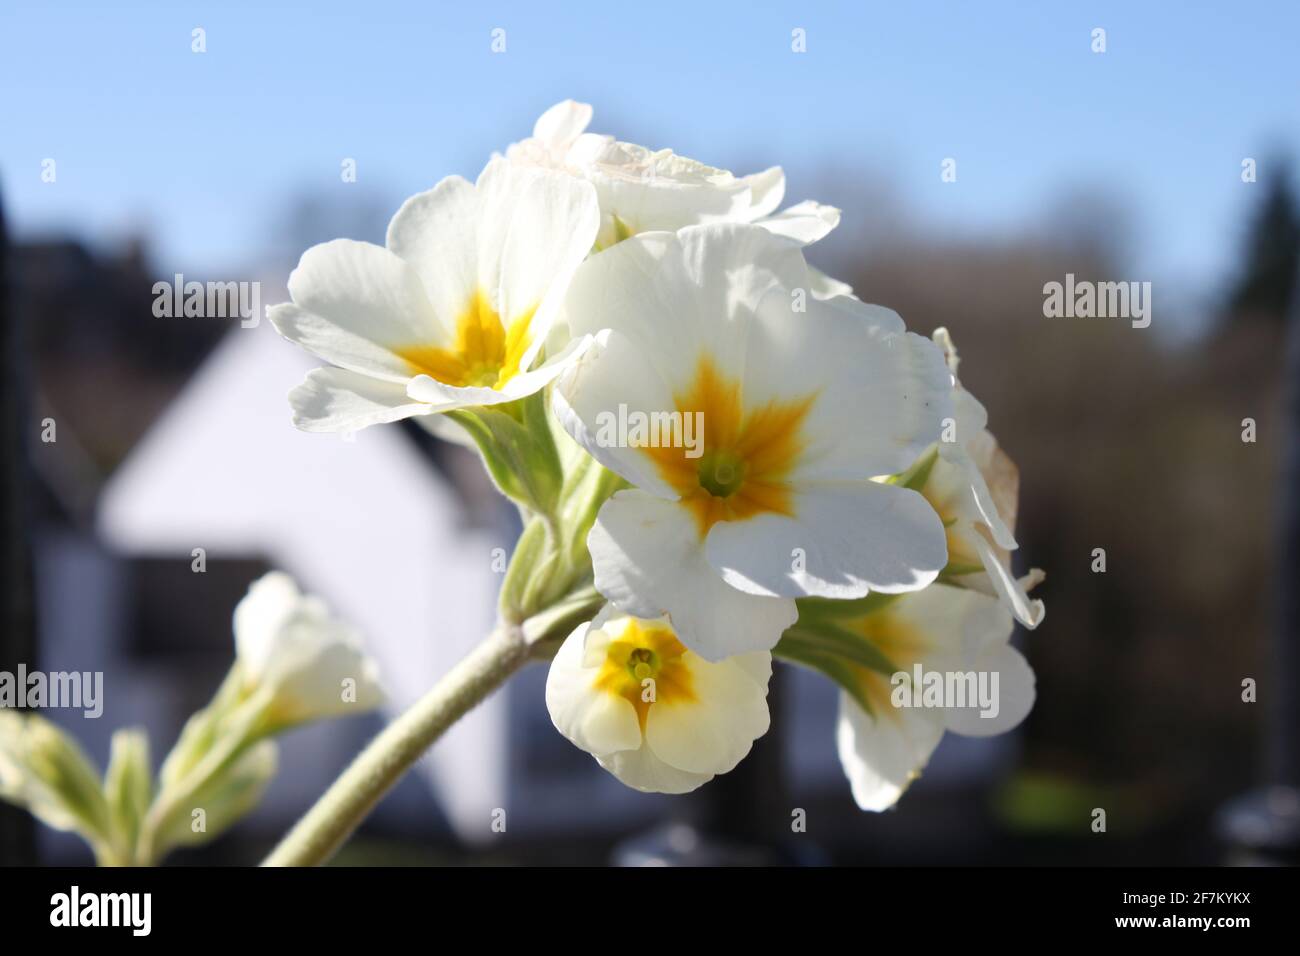 Schöne weiße und gelbe Primeln fotografiert, die nach dem Himmel greifen. Frühlingsgrundeln (primulaceae) Vernetzung und bessere Lebensräume, Großbritannien. Stockfoto